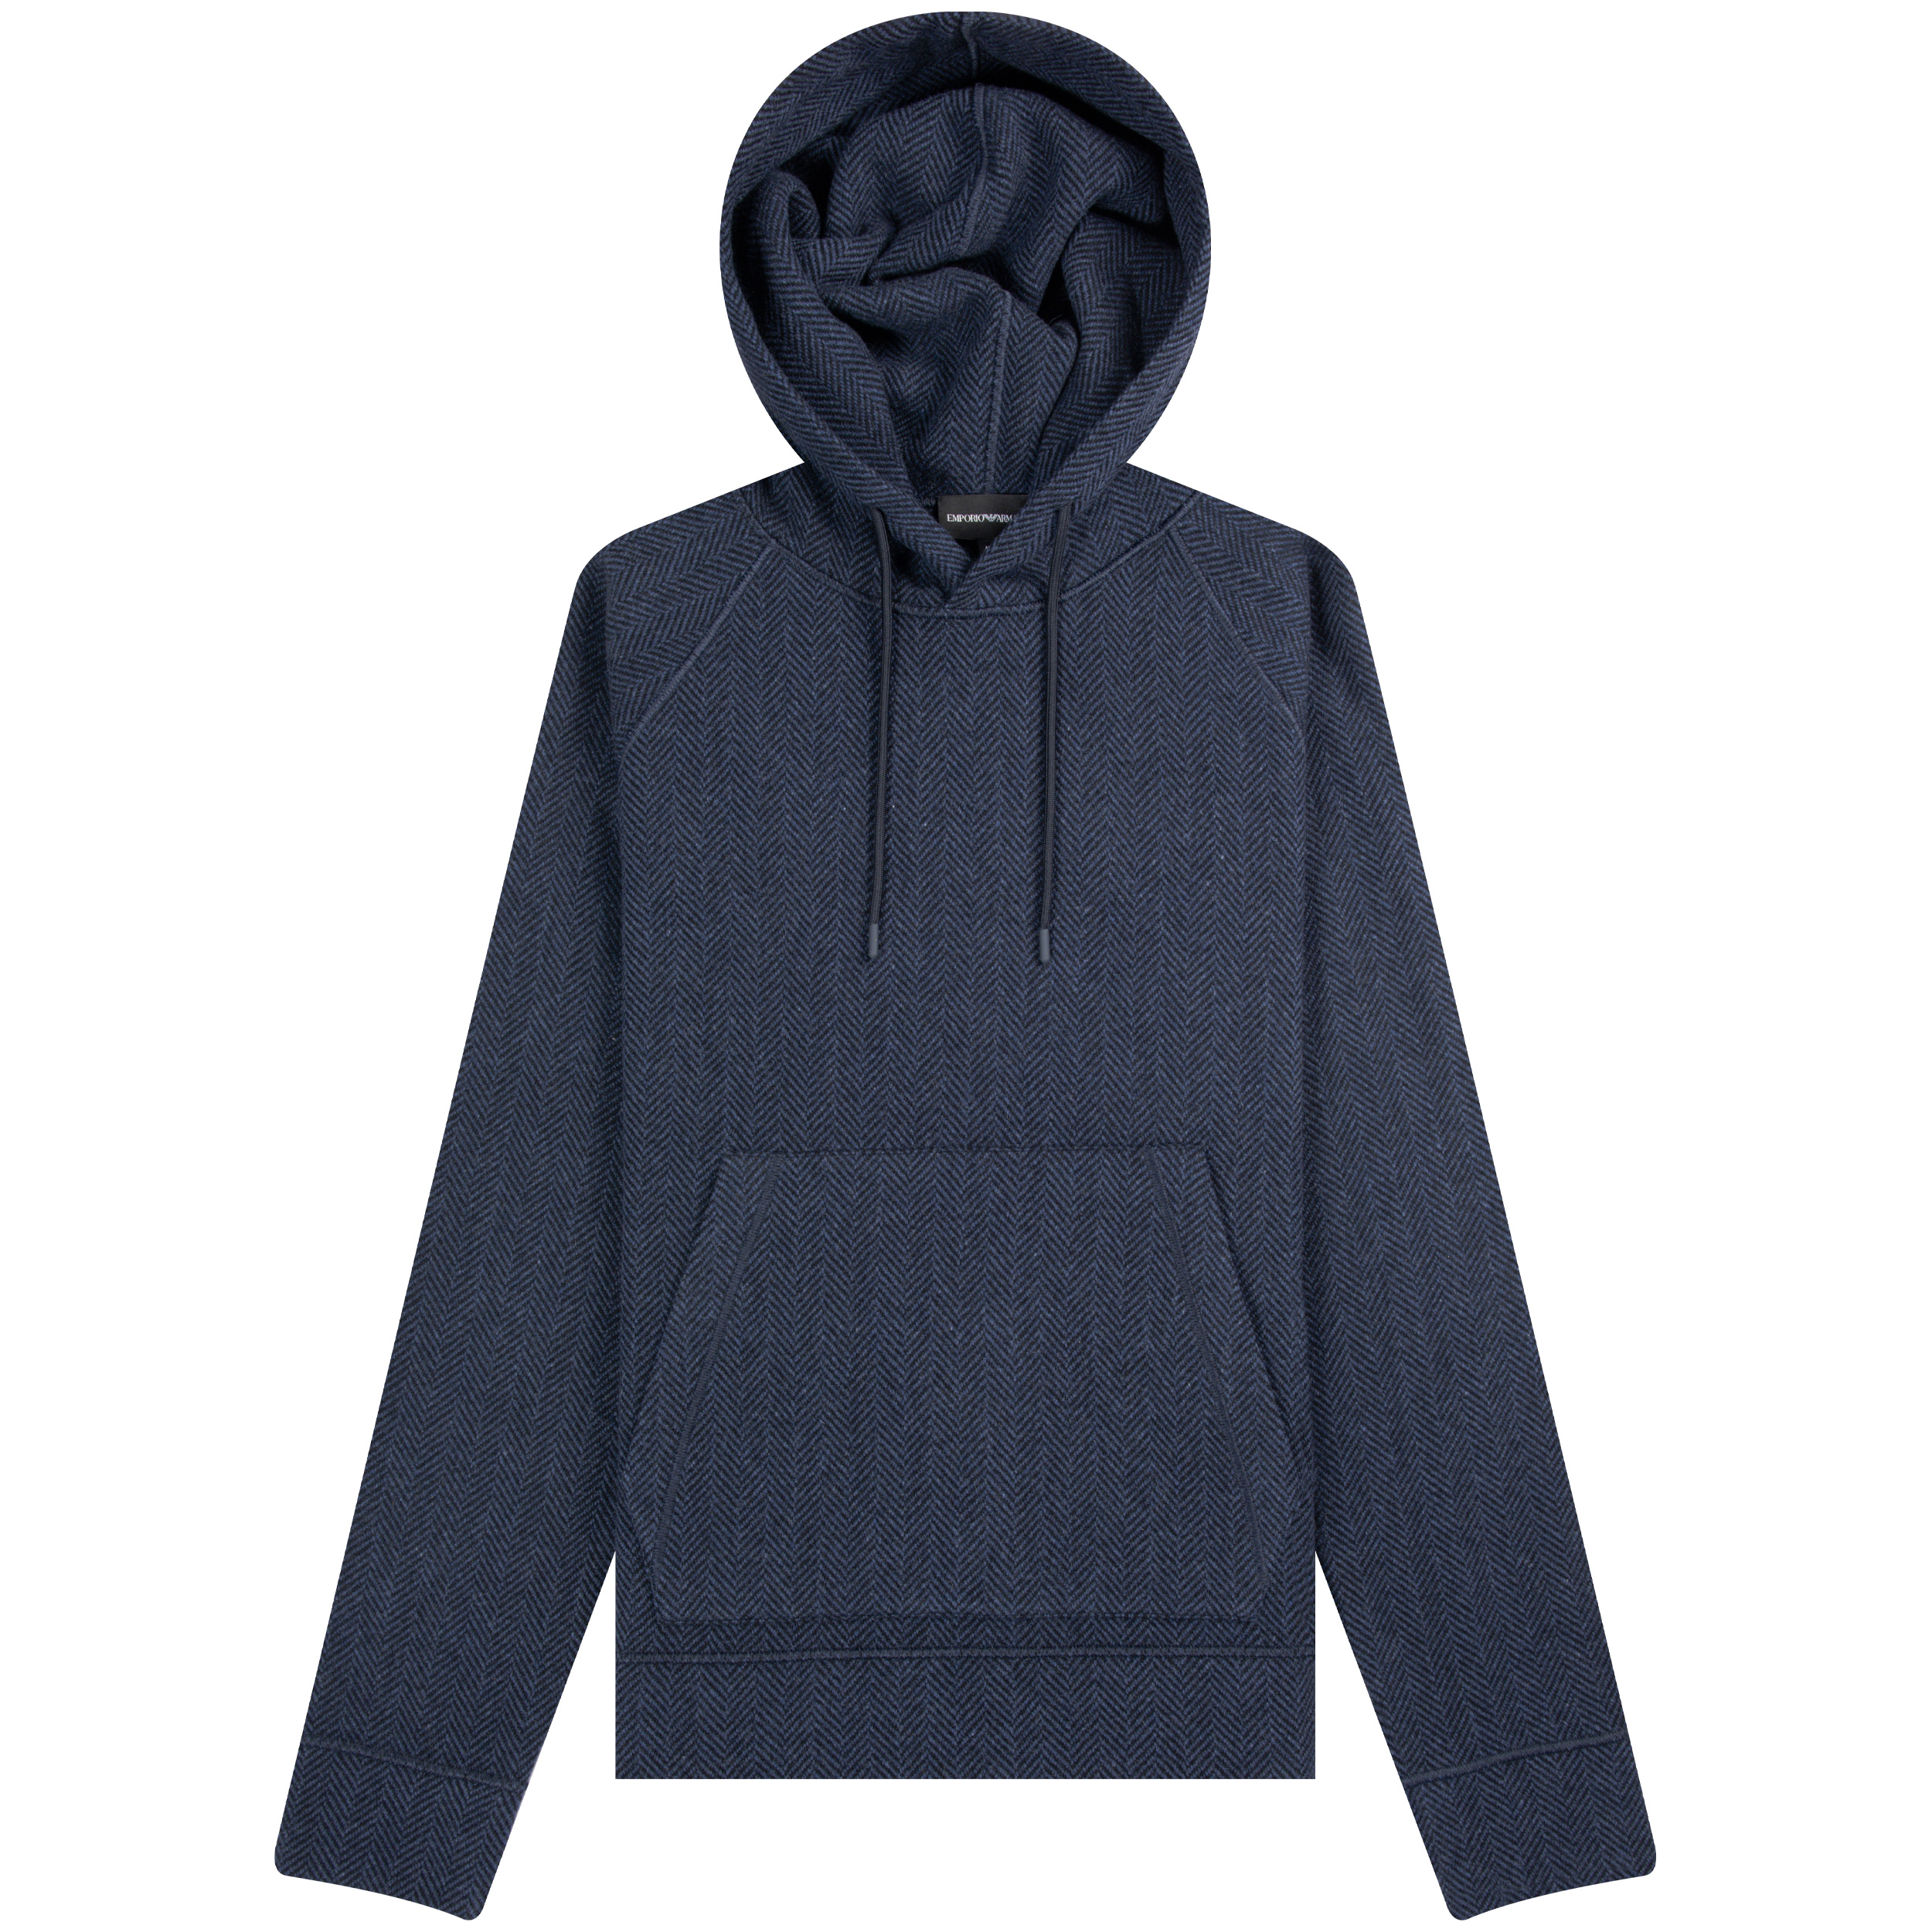 Emporio Armani ’Luxury Wool’ Herrington Hoodie Navy/Black